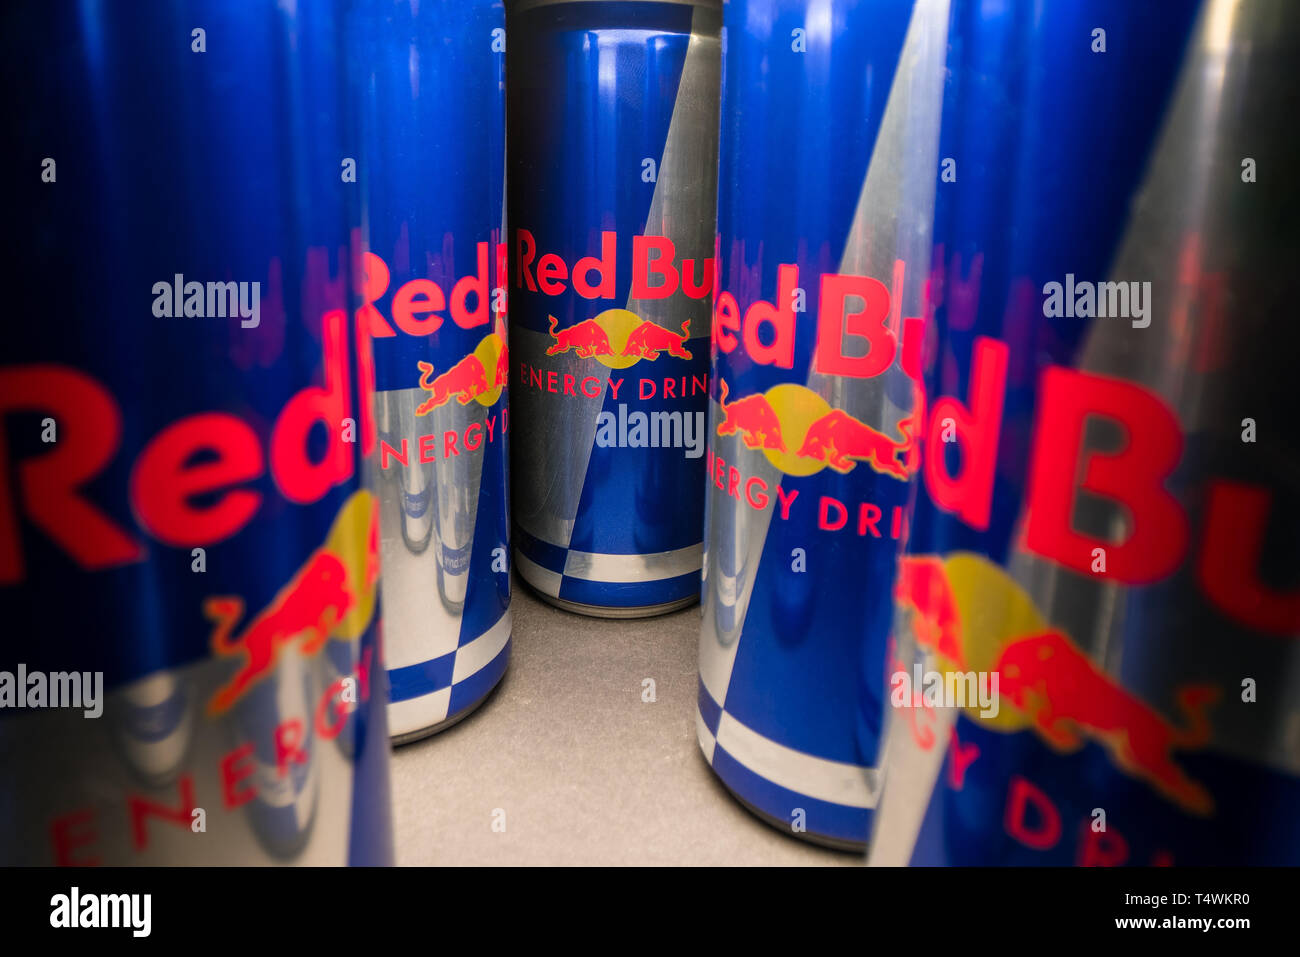 Red Bull classic - một sự kết hợp tuyệt vời giữa hương vị đặc biệt và lượng caffeine tiêu chuẩn sẽ giúp bạn thức tỉnh và tăng cường năng lượng. Xem những hình ảnh đặc trưng của thương hiệu này để cảm nhận sức mạnh của nó.